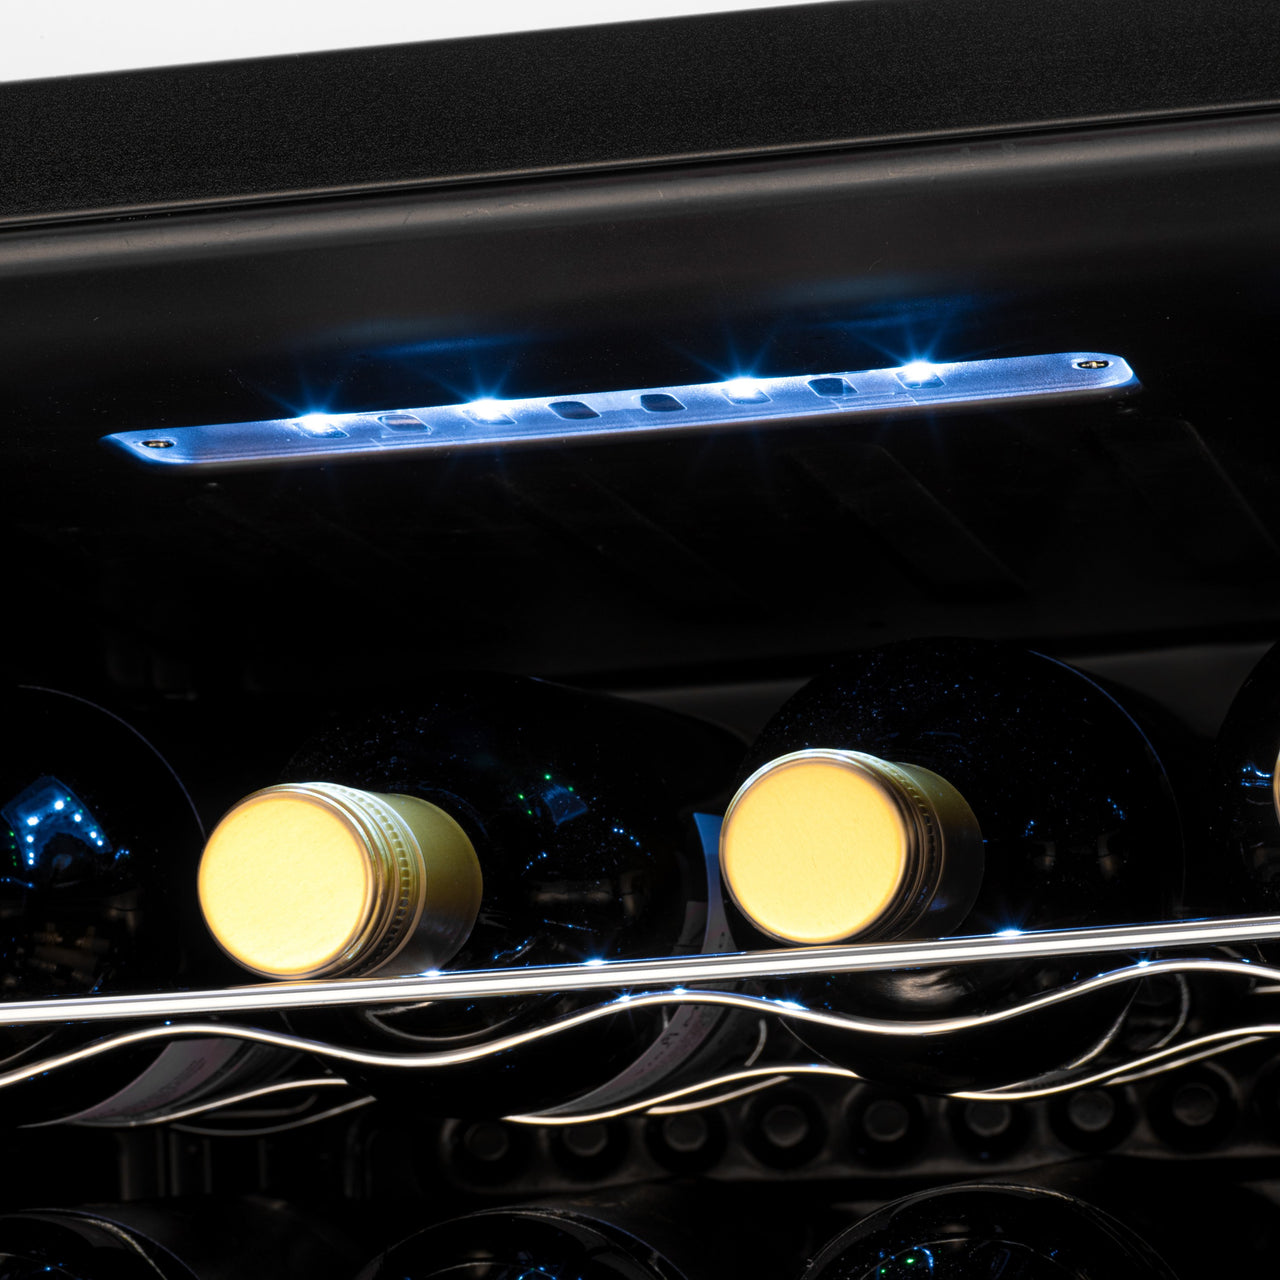 Subcold Viva 16 bottles wine cooler fridge (48 litre) internal LED light